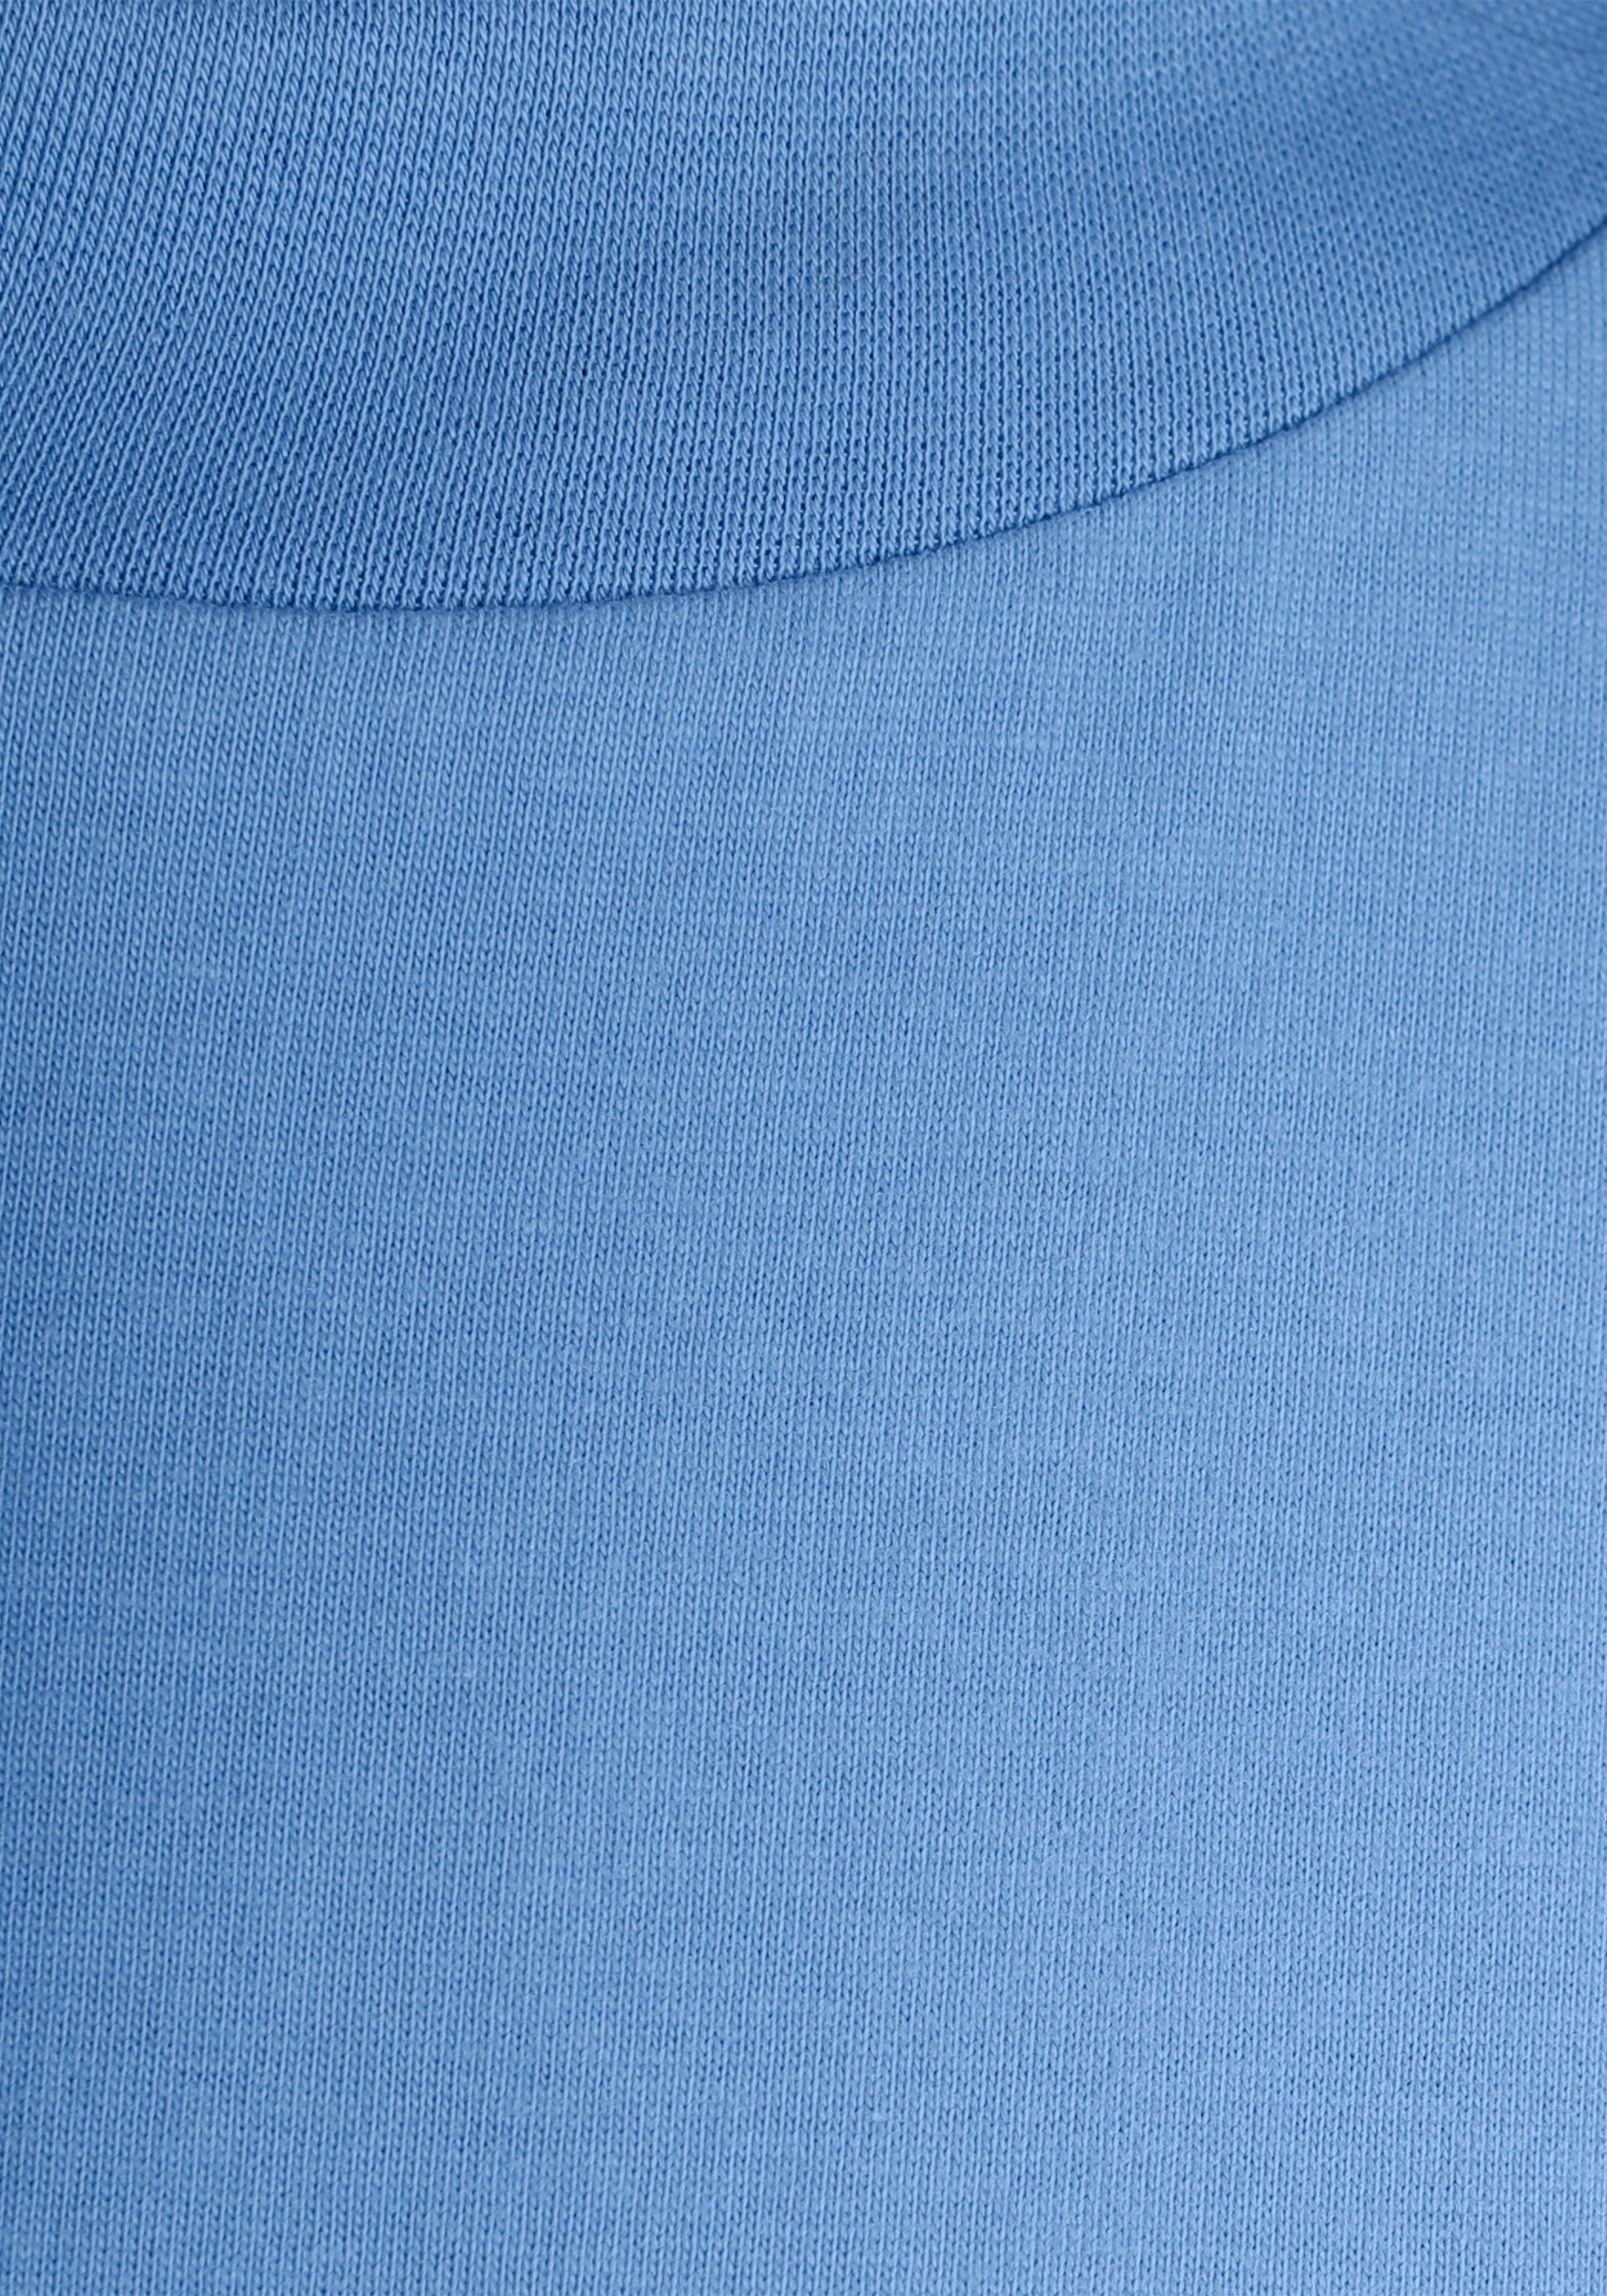 Rippen-Rundhalsausschnitt modisch Oversize-Shirt AJC breitem himmelblau mit